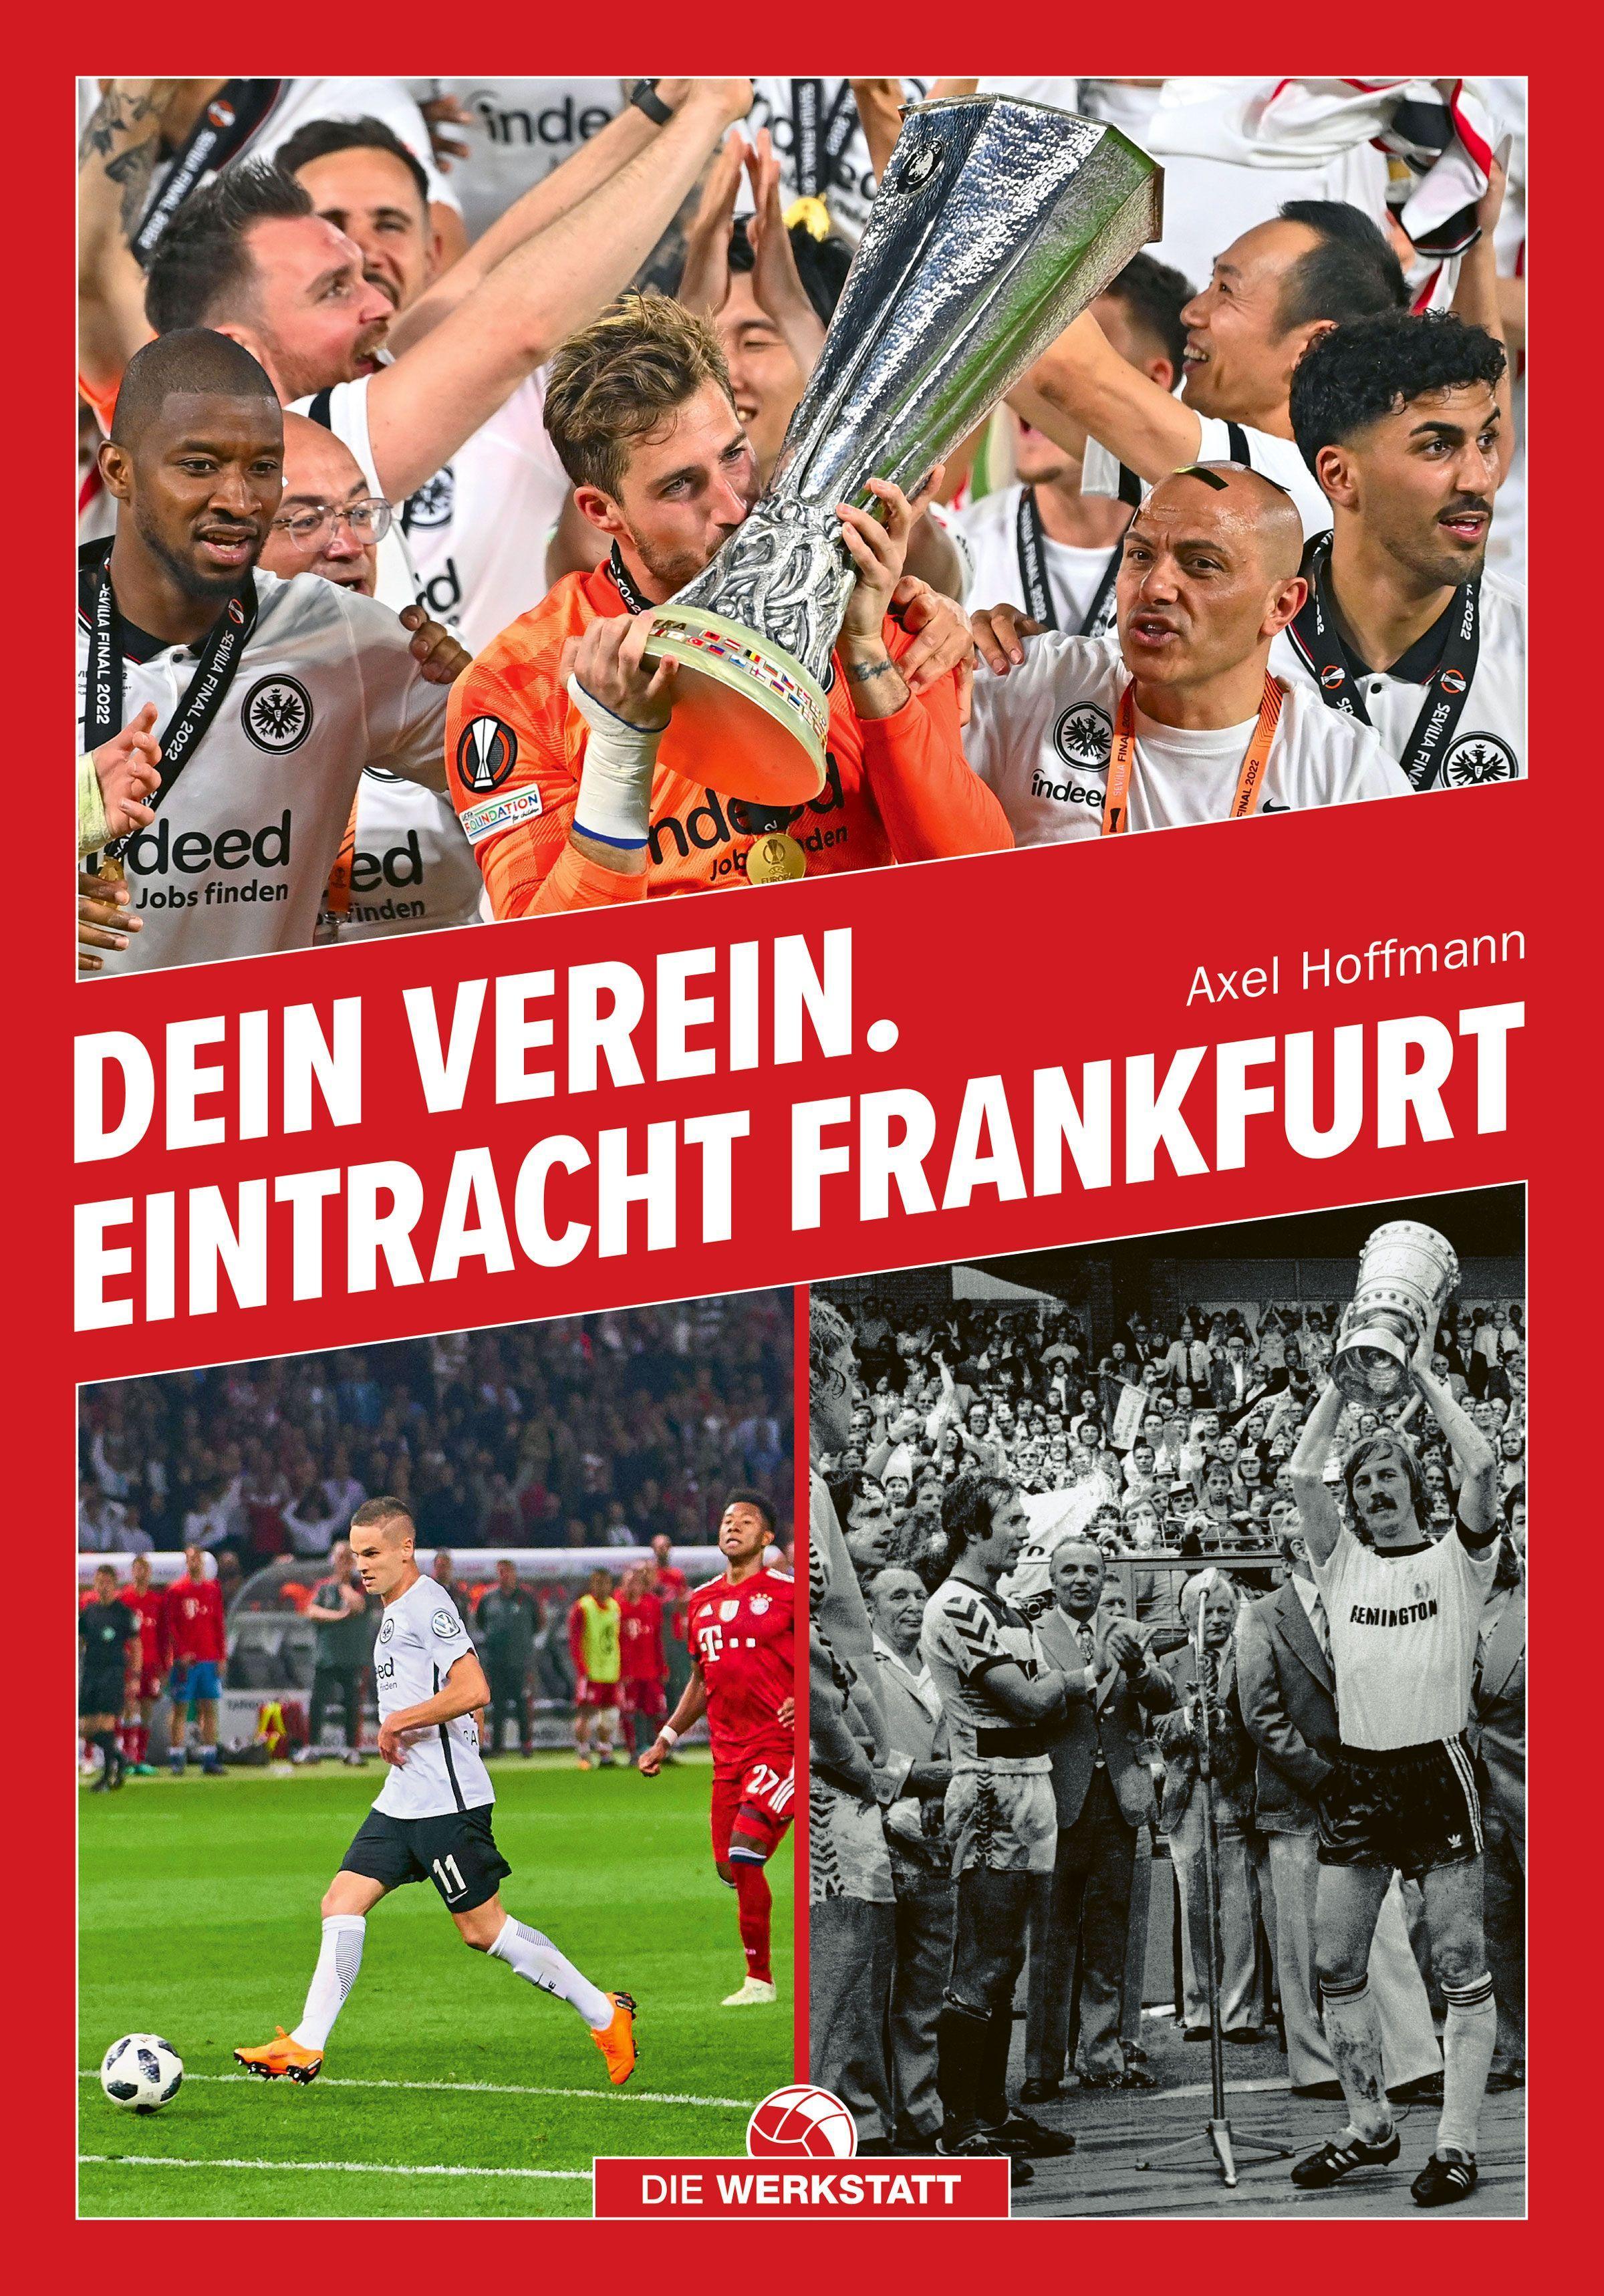 Dein Verein. Eintracht Frankfurt Dein Verein